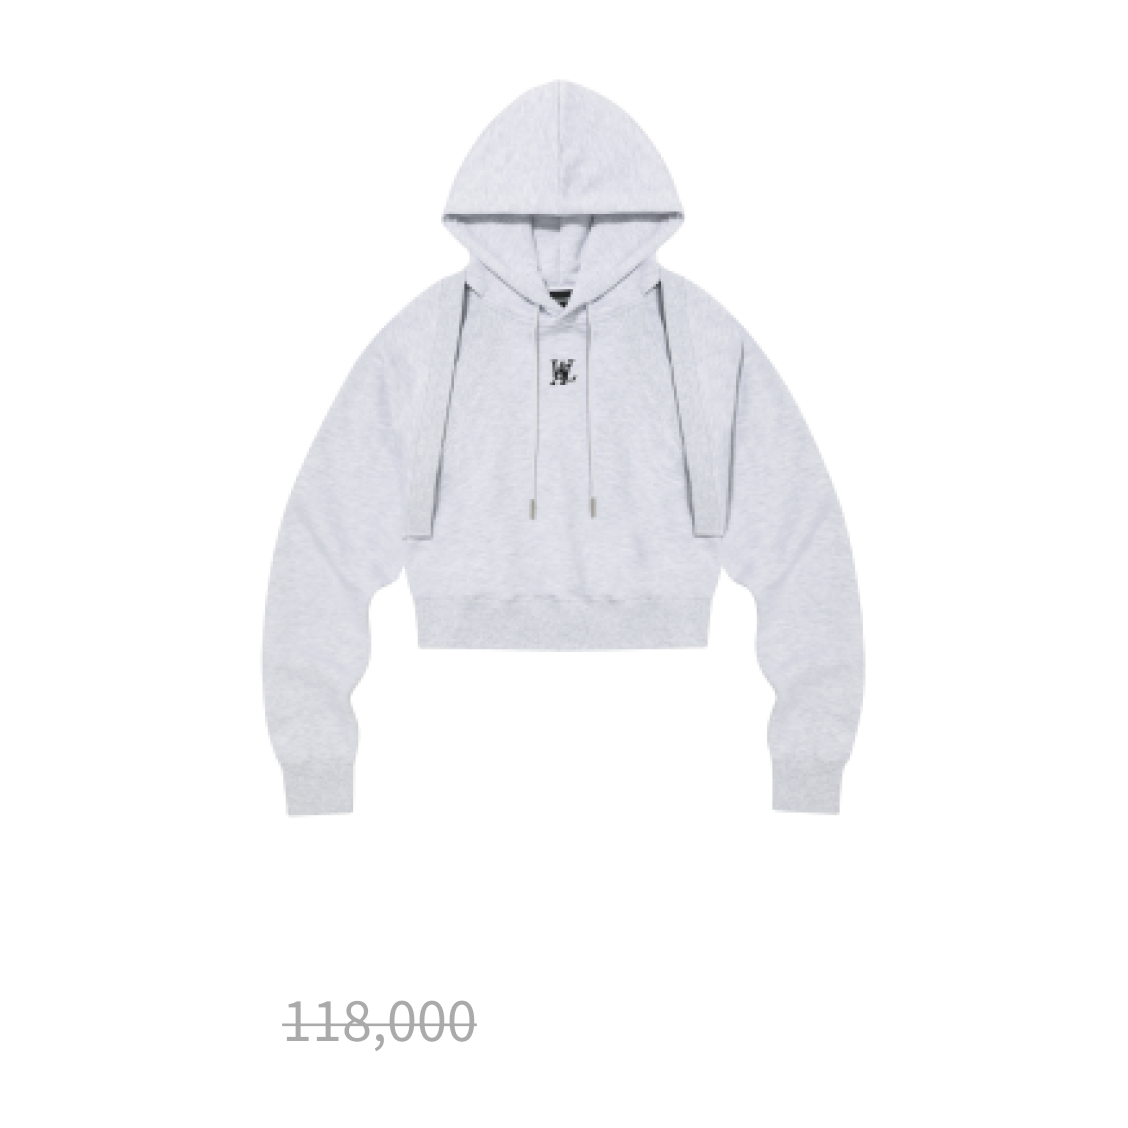 Hood bolero set-up - MELANGE WHITE